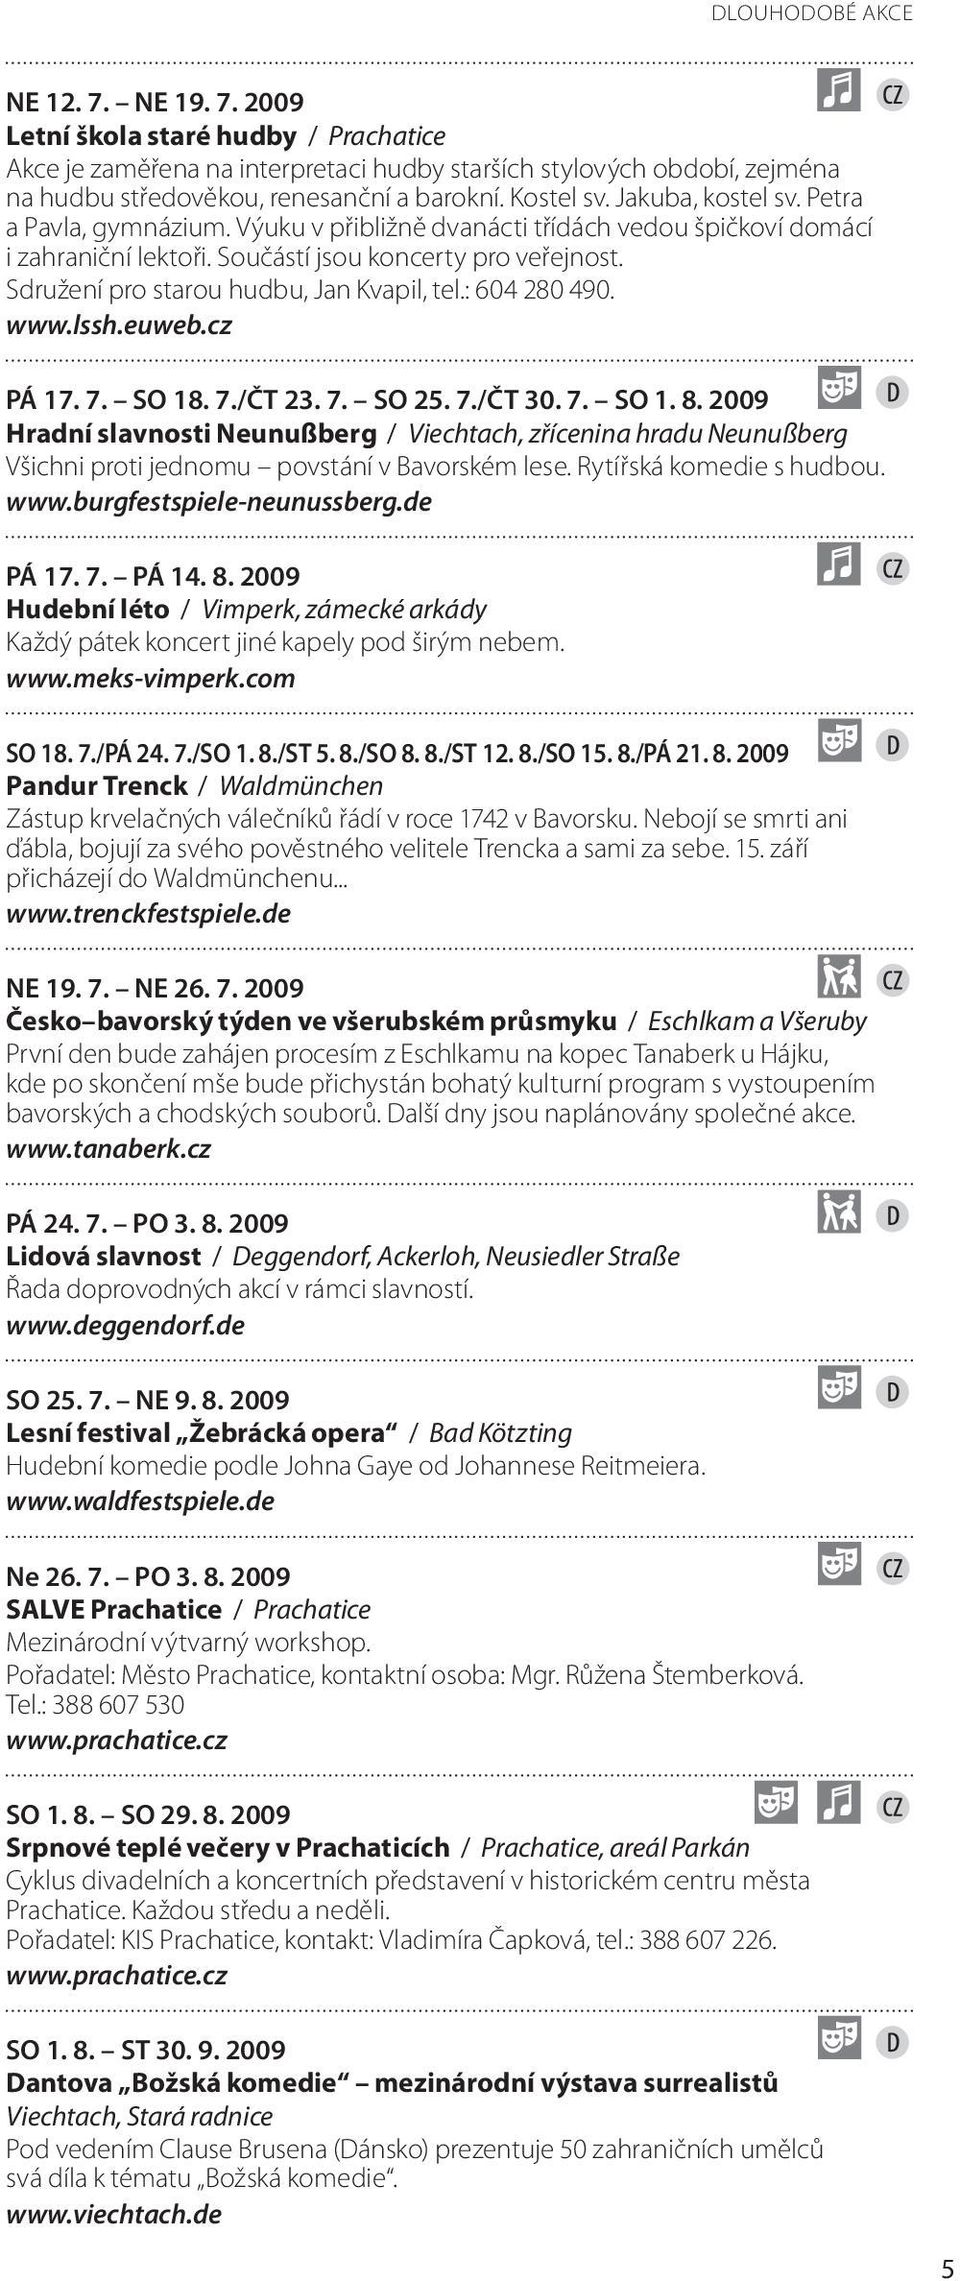 Sdružení pro starou hudbu, Jan Kvapil, tel.: 604 280 490. www.lssh.euweb.cz PÁ 17. 7. SO 18. 7./ČT 23. 7. SO 25. 7./ČT 30. 7. SO 1. 8.